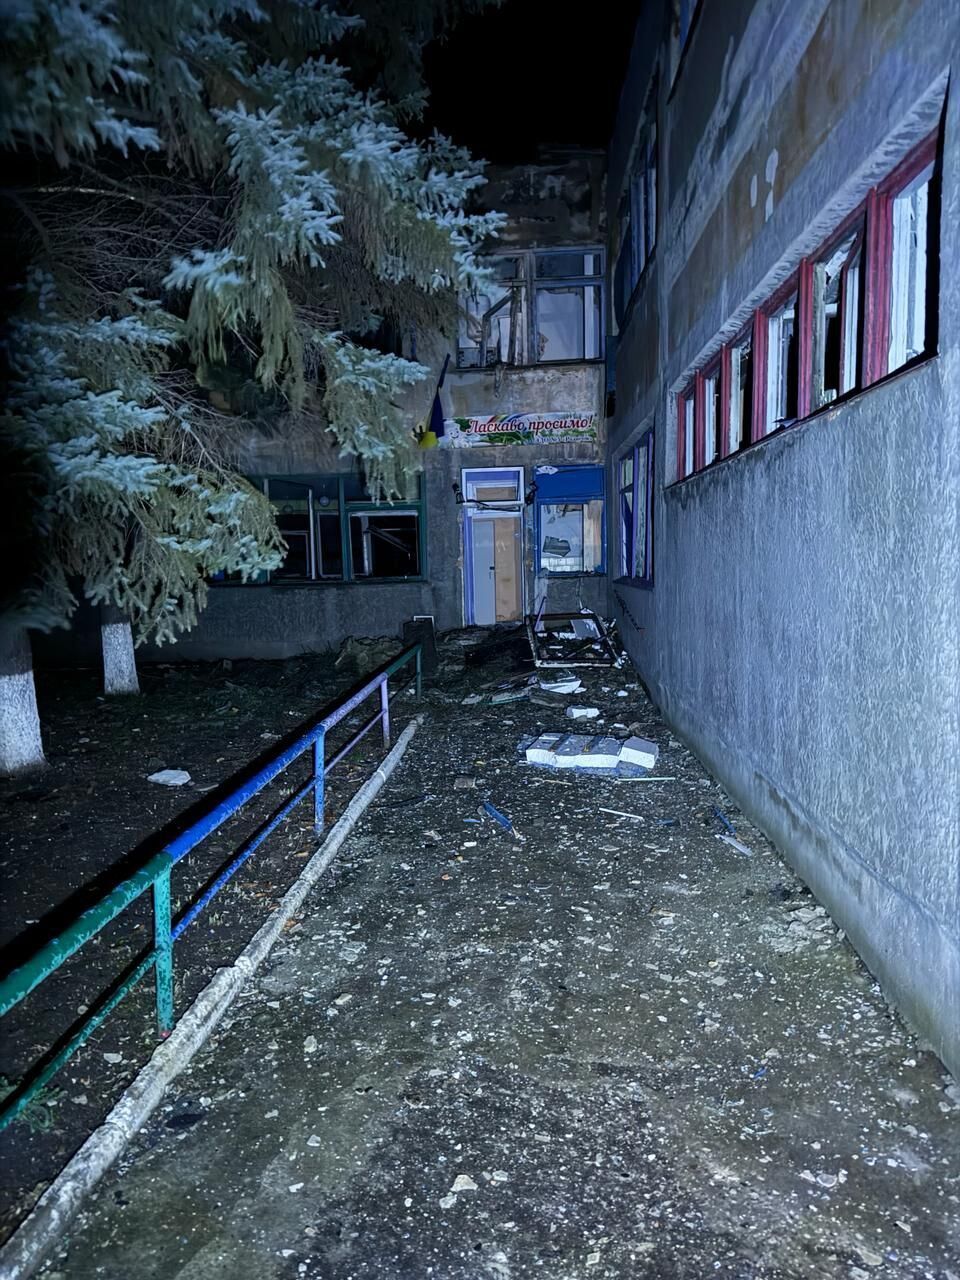 Війська РФ обстріляли Селидове на Донеччині: є руйнування, під завалами опинилася людина. Фото xdidzriruiqqhant